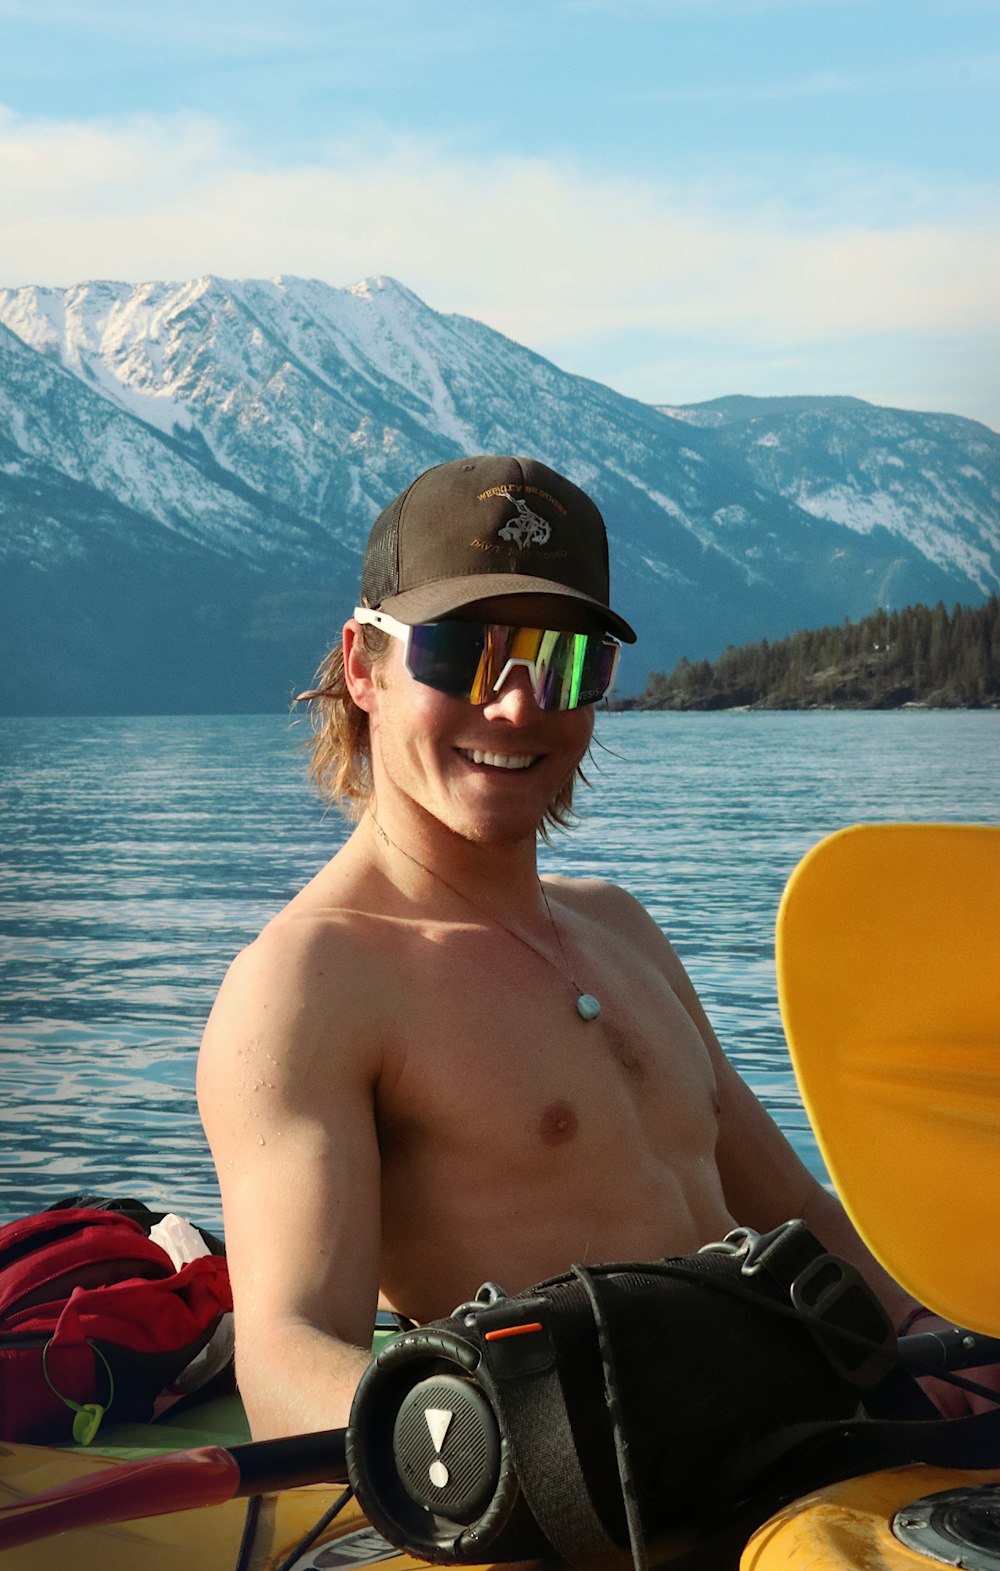 a shirtless man sitting in a kayak on a lake